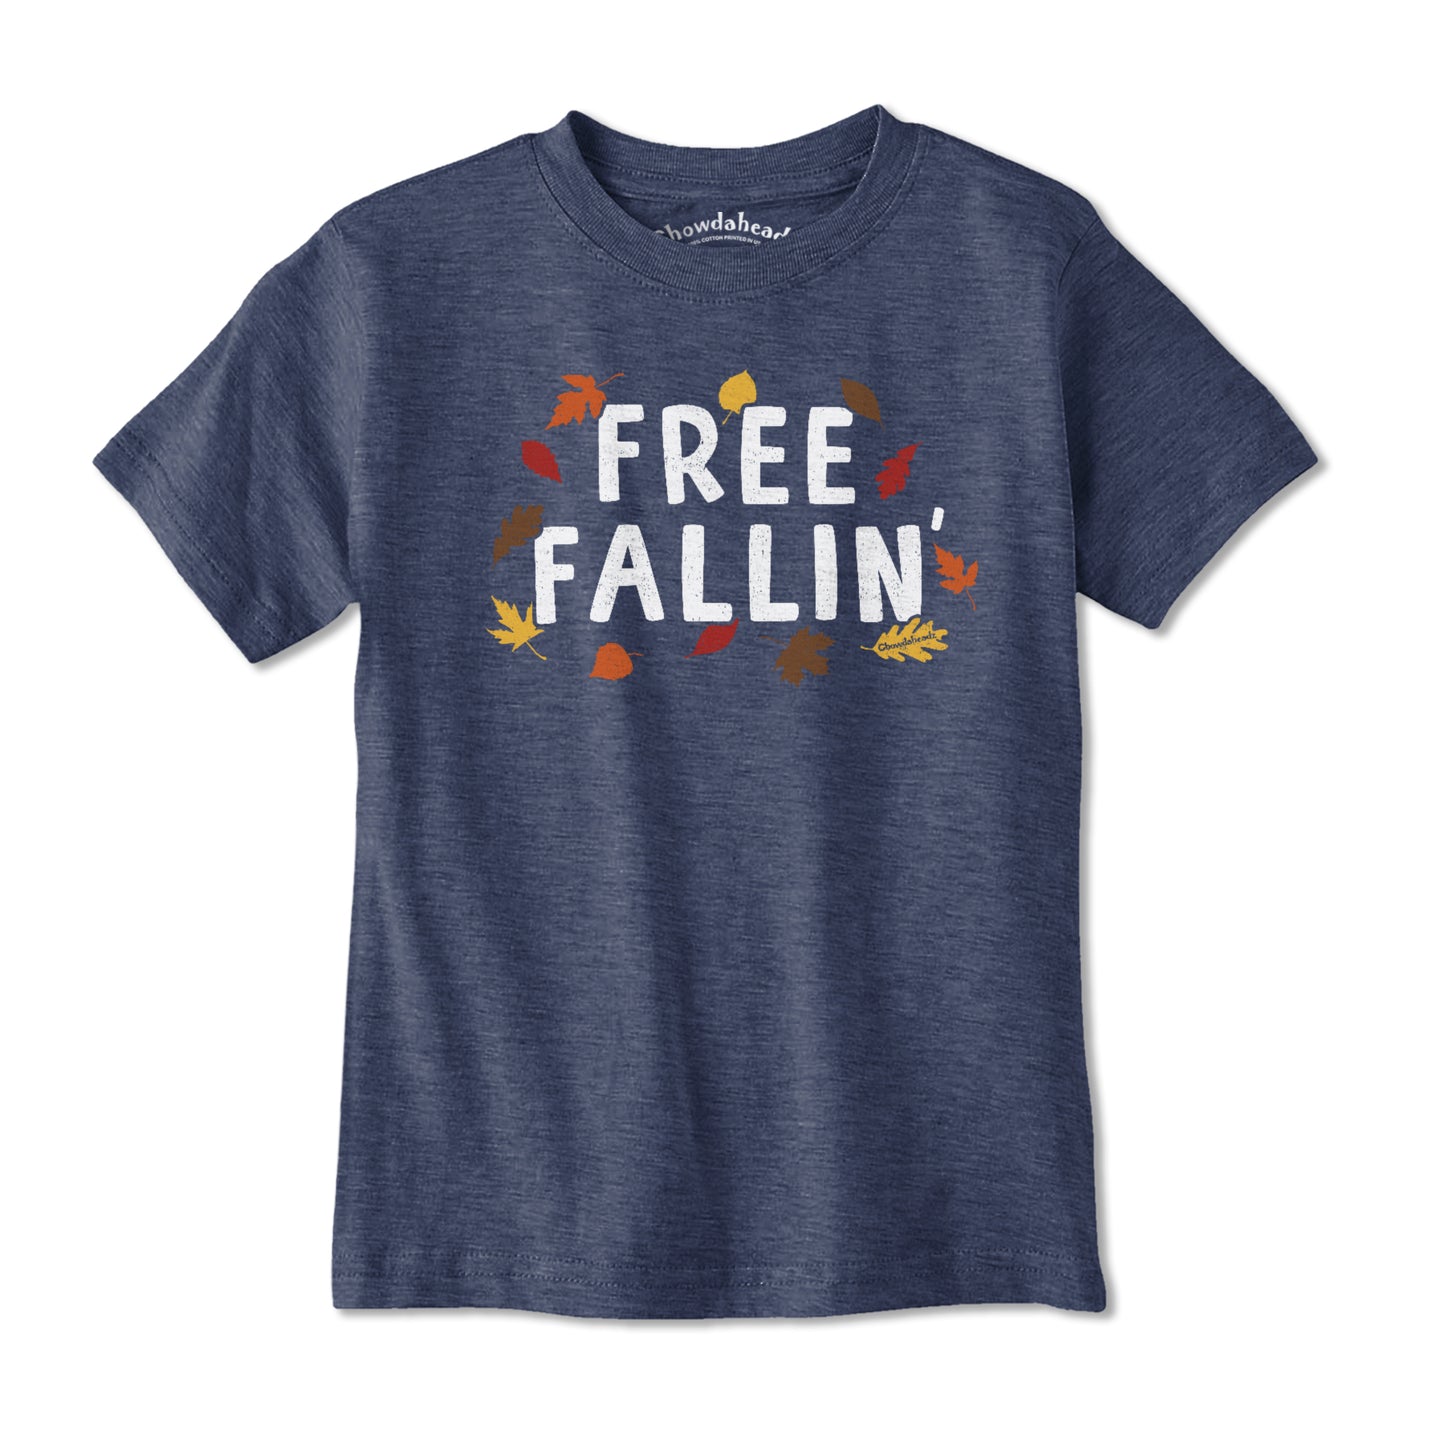 Free Fallin' Youth T-Shirt - Chowdaheadz